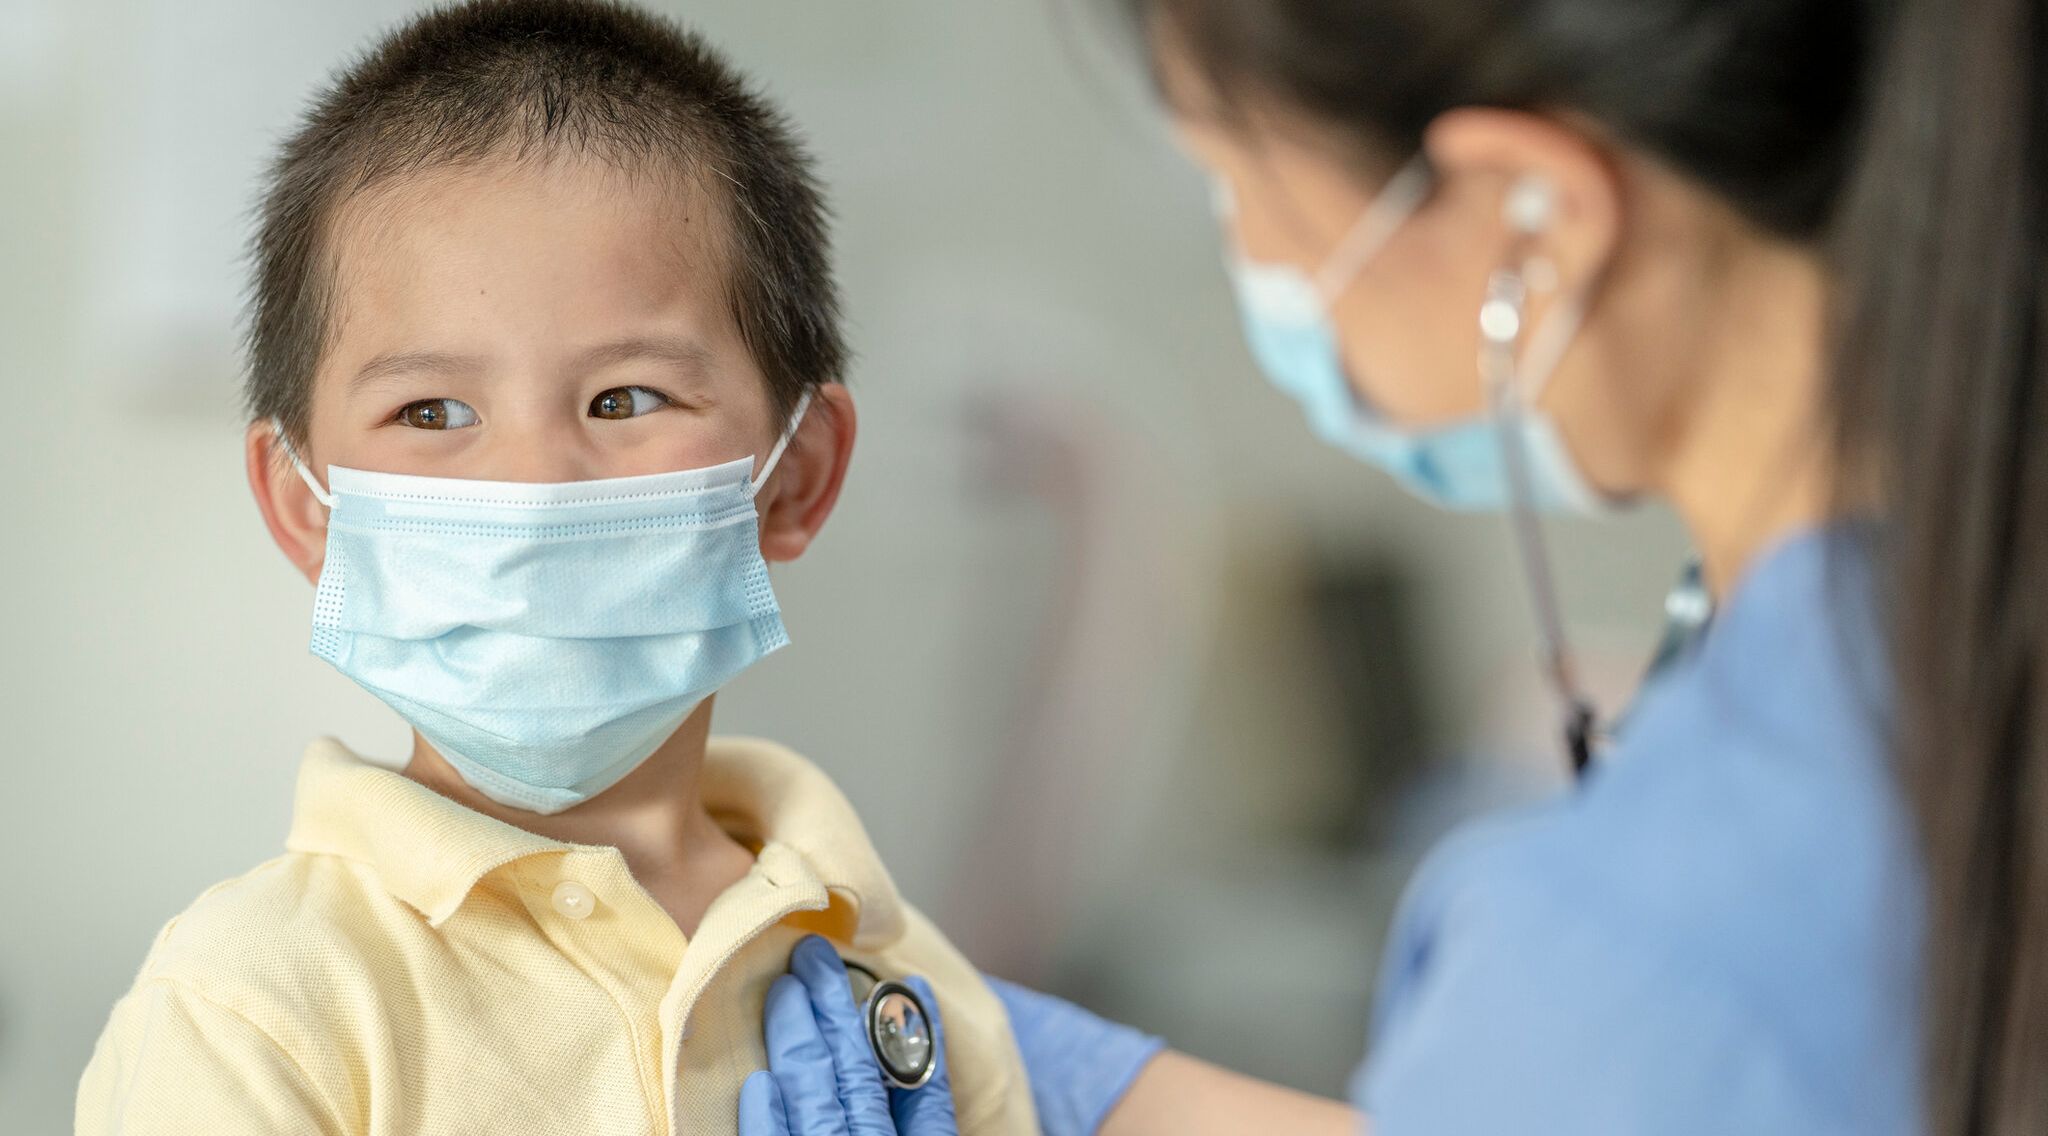 مستشفى إماراتي متخصّص في تقديم الرعاية الصحية للأطفال بعد الإصابة بكوفيد 19